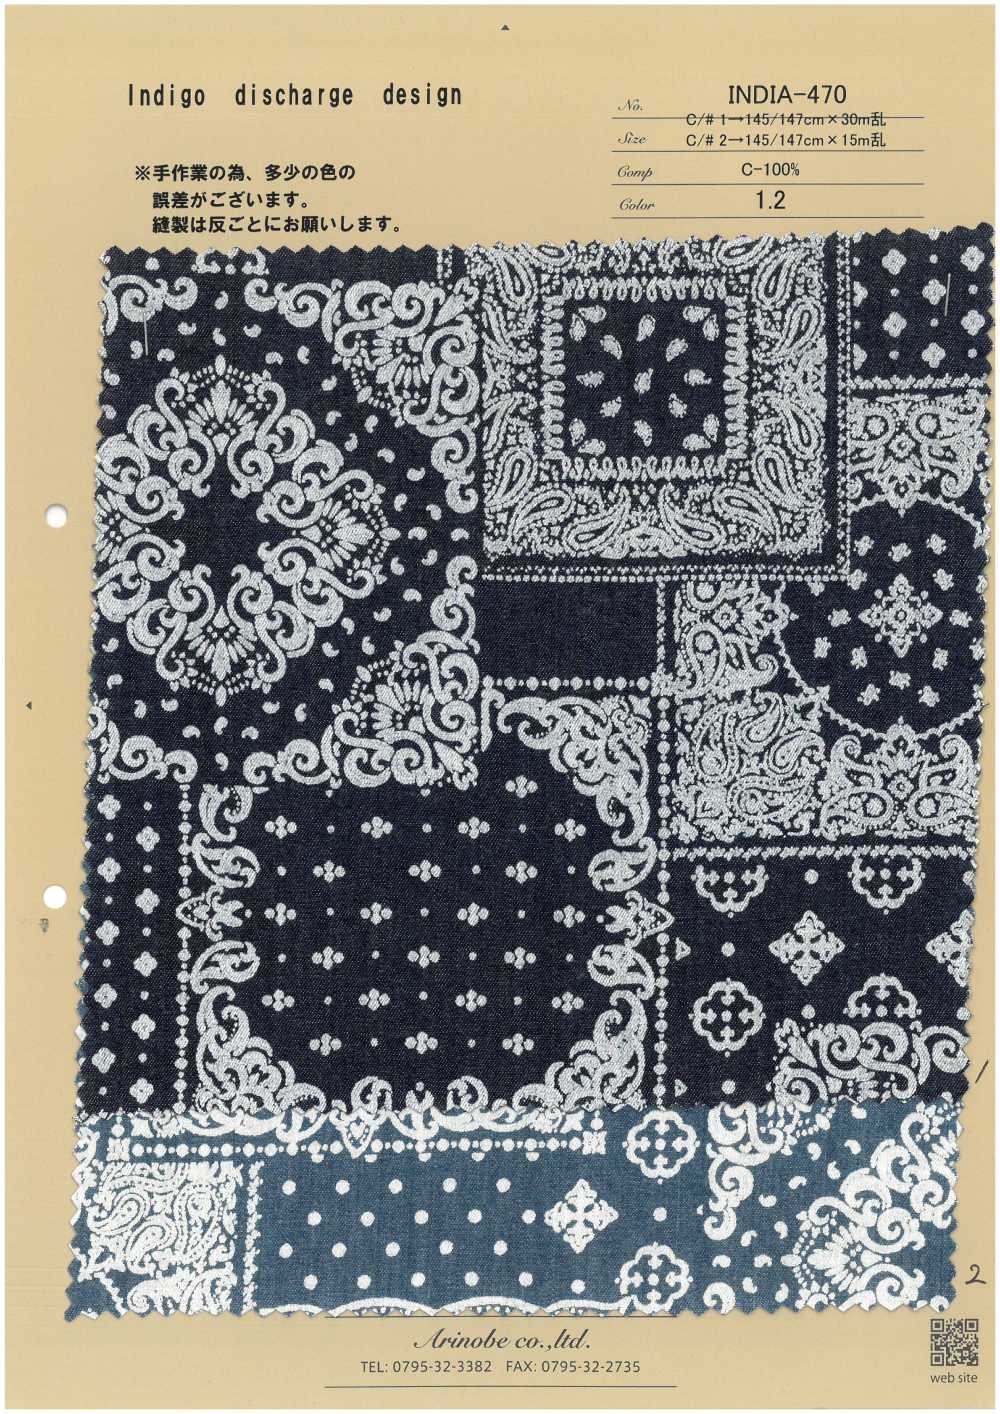 INDIA-470 Diseño De Descarga índigo[Fabrica Textil] ARINOBE CO., LTD.